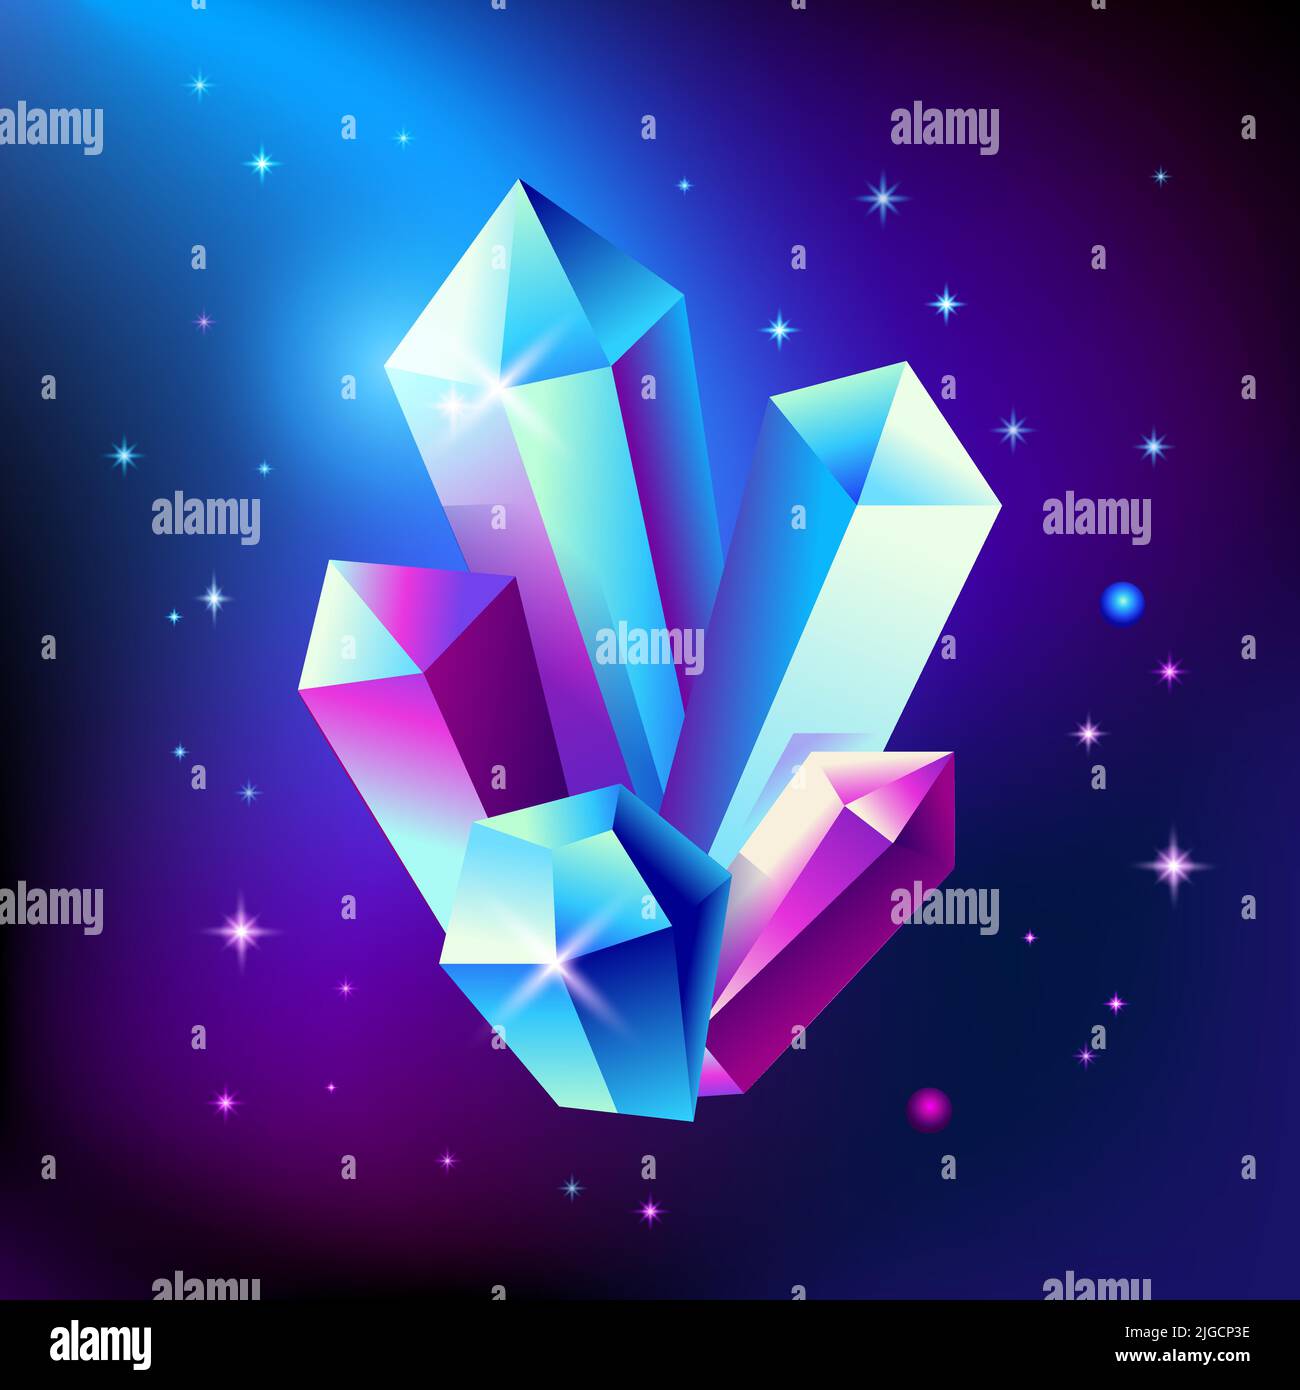 Póster cósmico de moda abstracto con gemas de cristal y formas geométricas piramidales en el espacio. Fondo de la galaxia de neón. estilo de los años 80. Cartel con geometría Ilustración del Vector